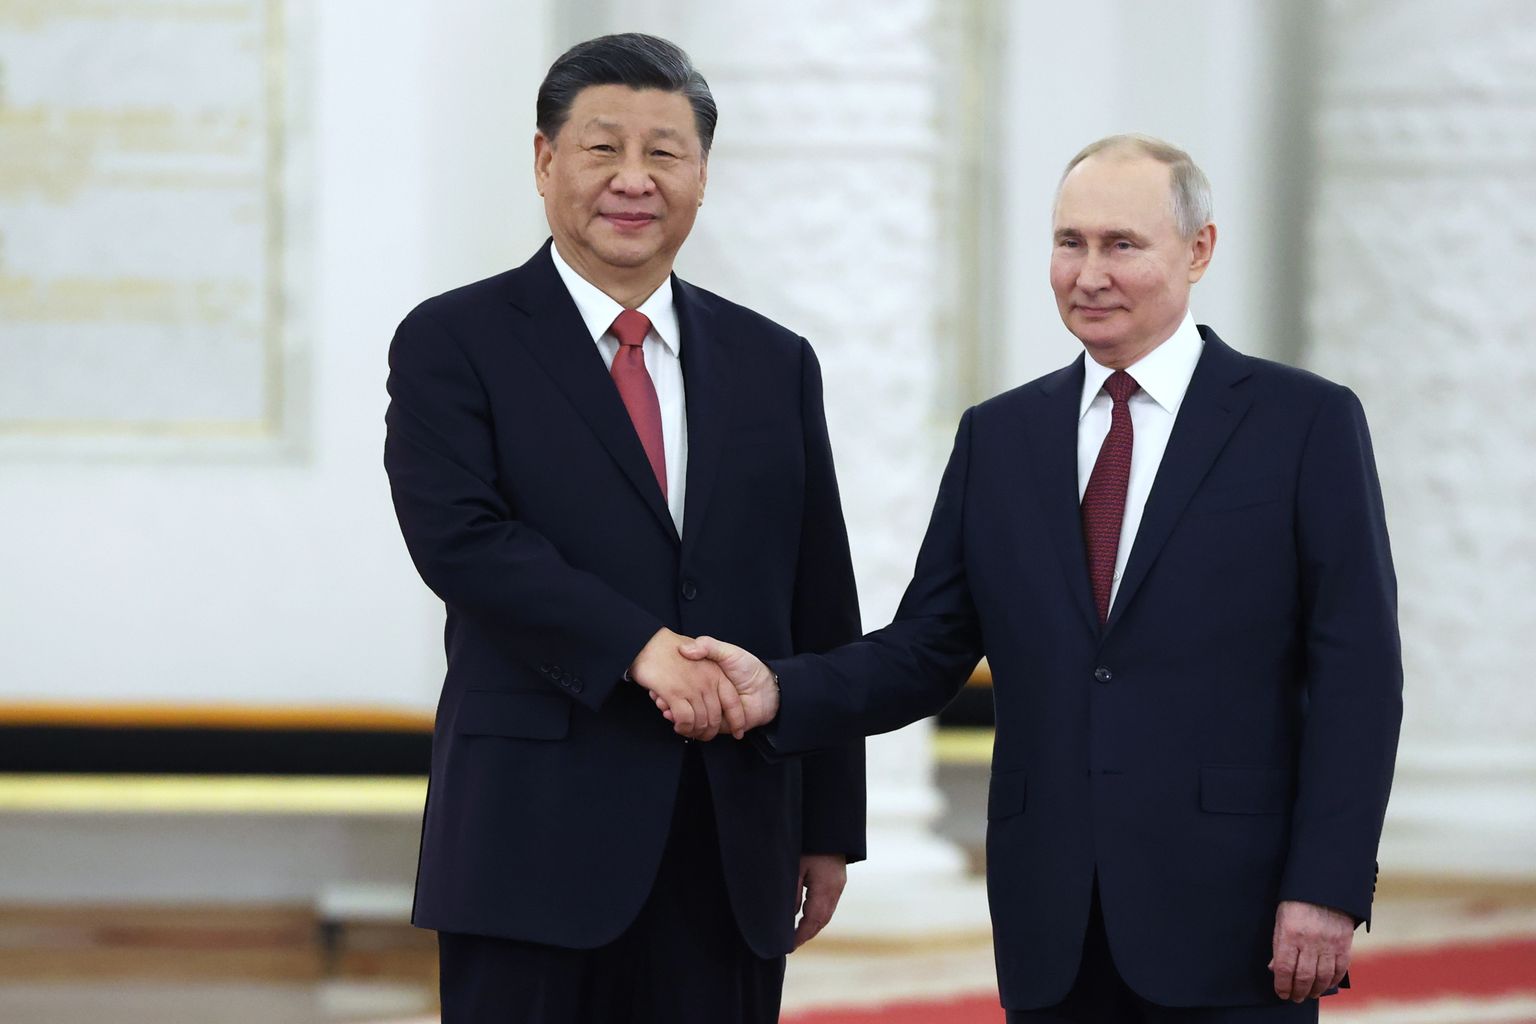 Hiina president Xi Jinping ja Venemaa president Vladimir Putin kohtusid teisipäeval Kremlis.